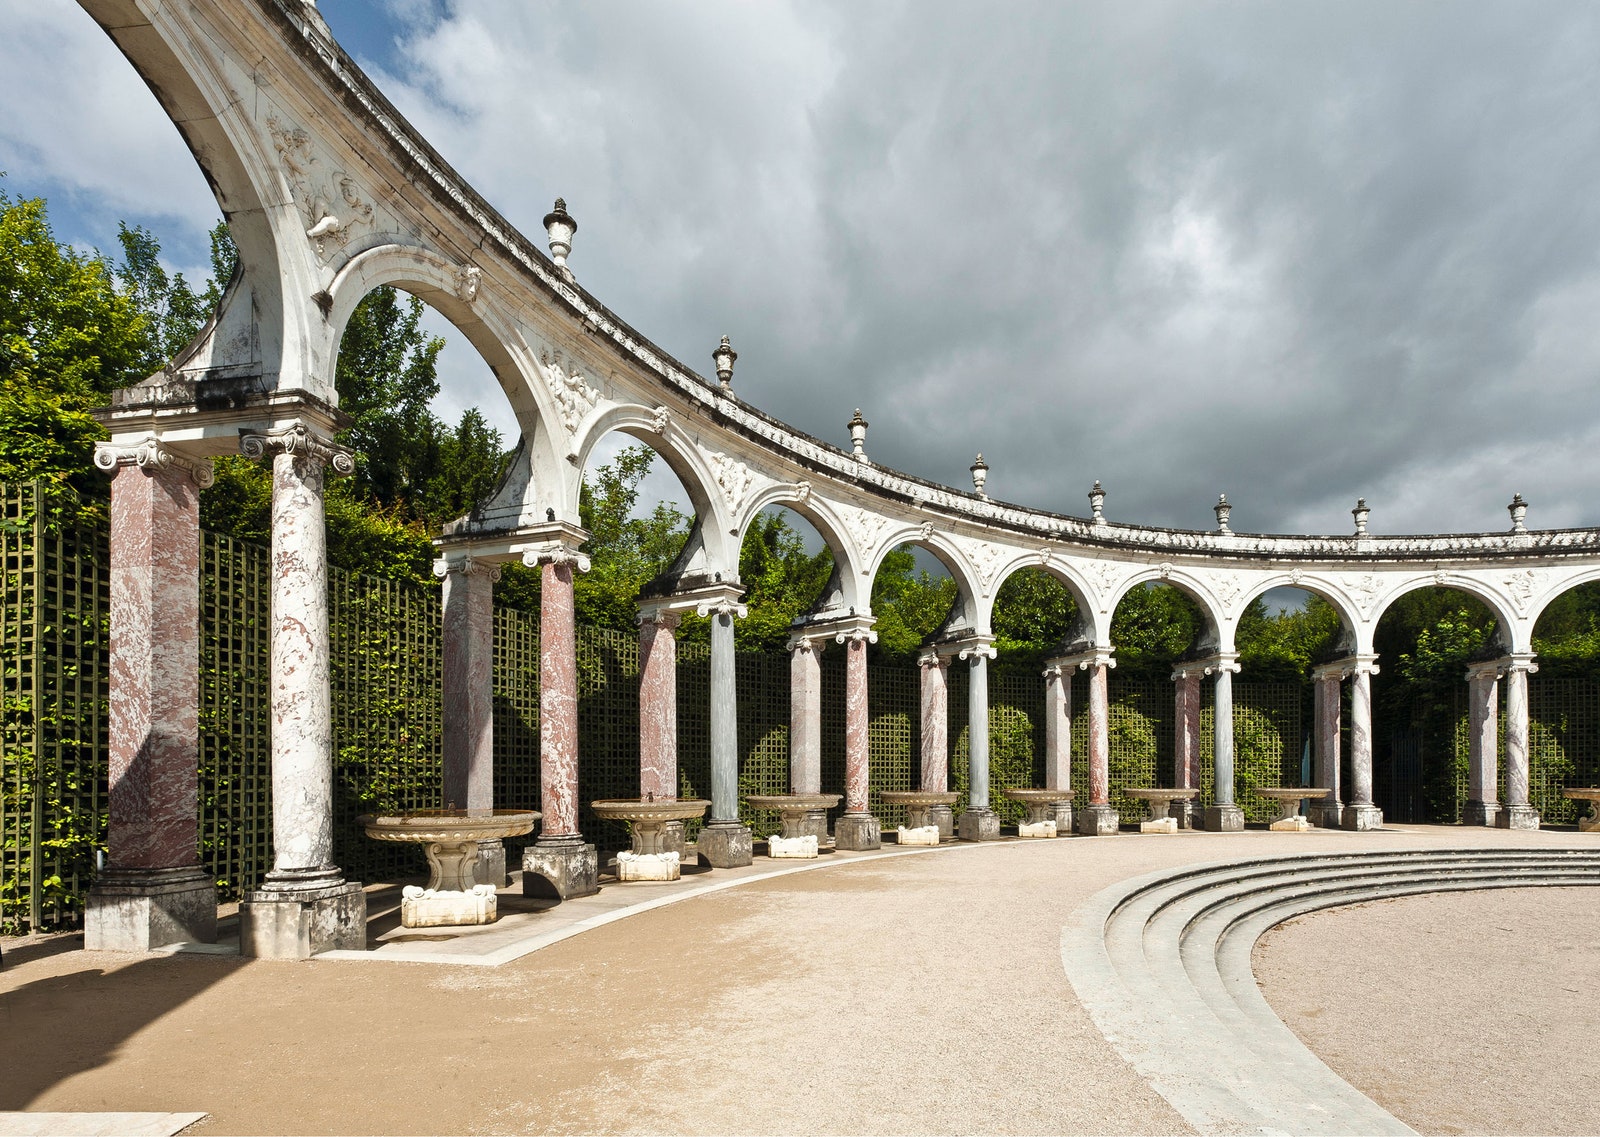 Версальский парк.